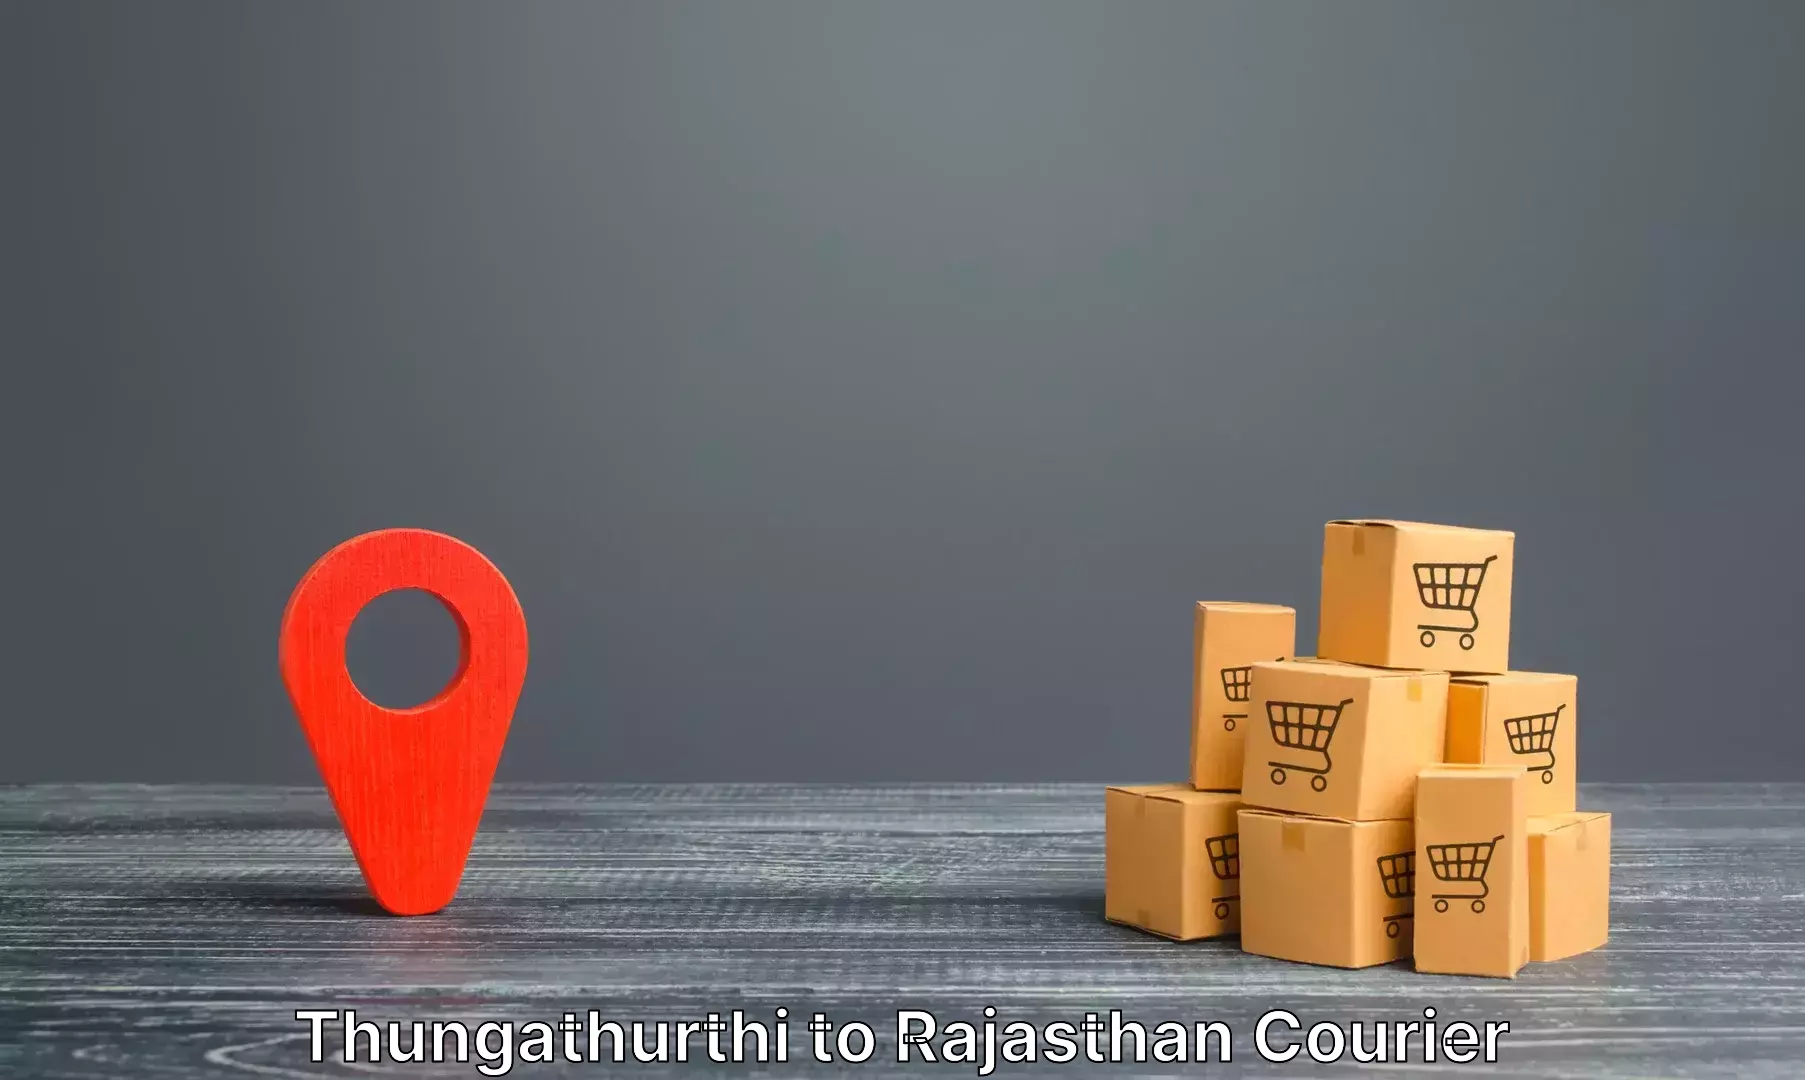 Luggage shipping planner Thungathurthi to Raila